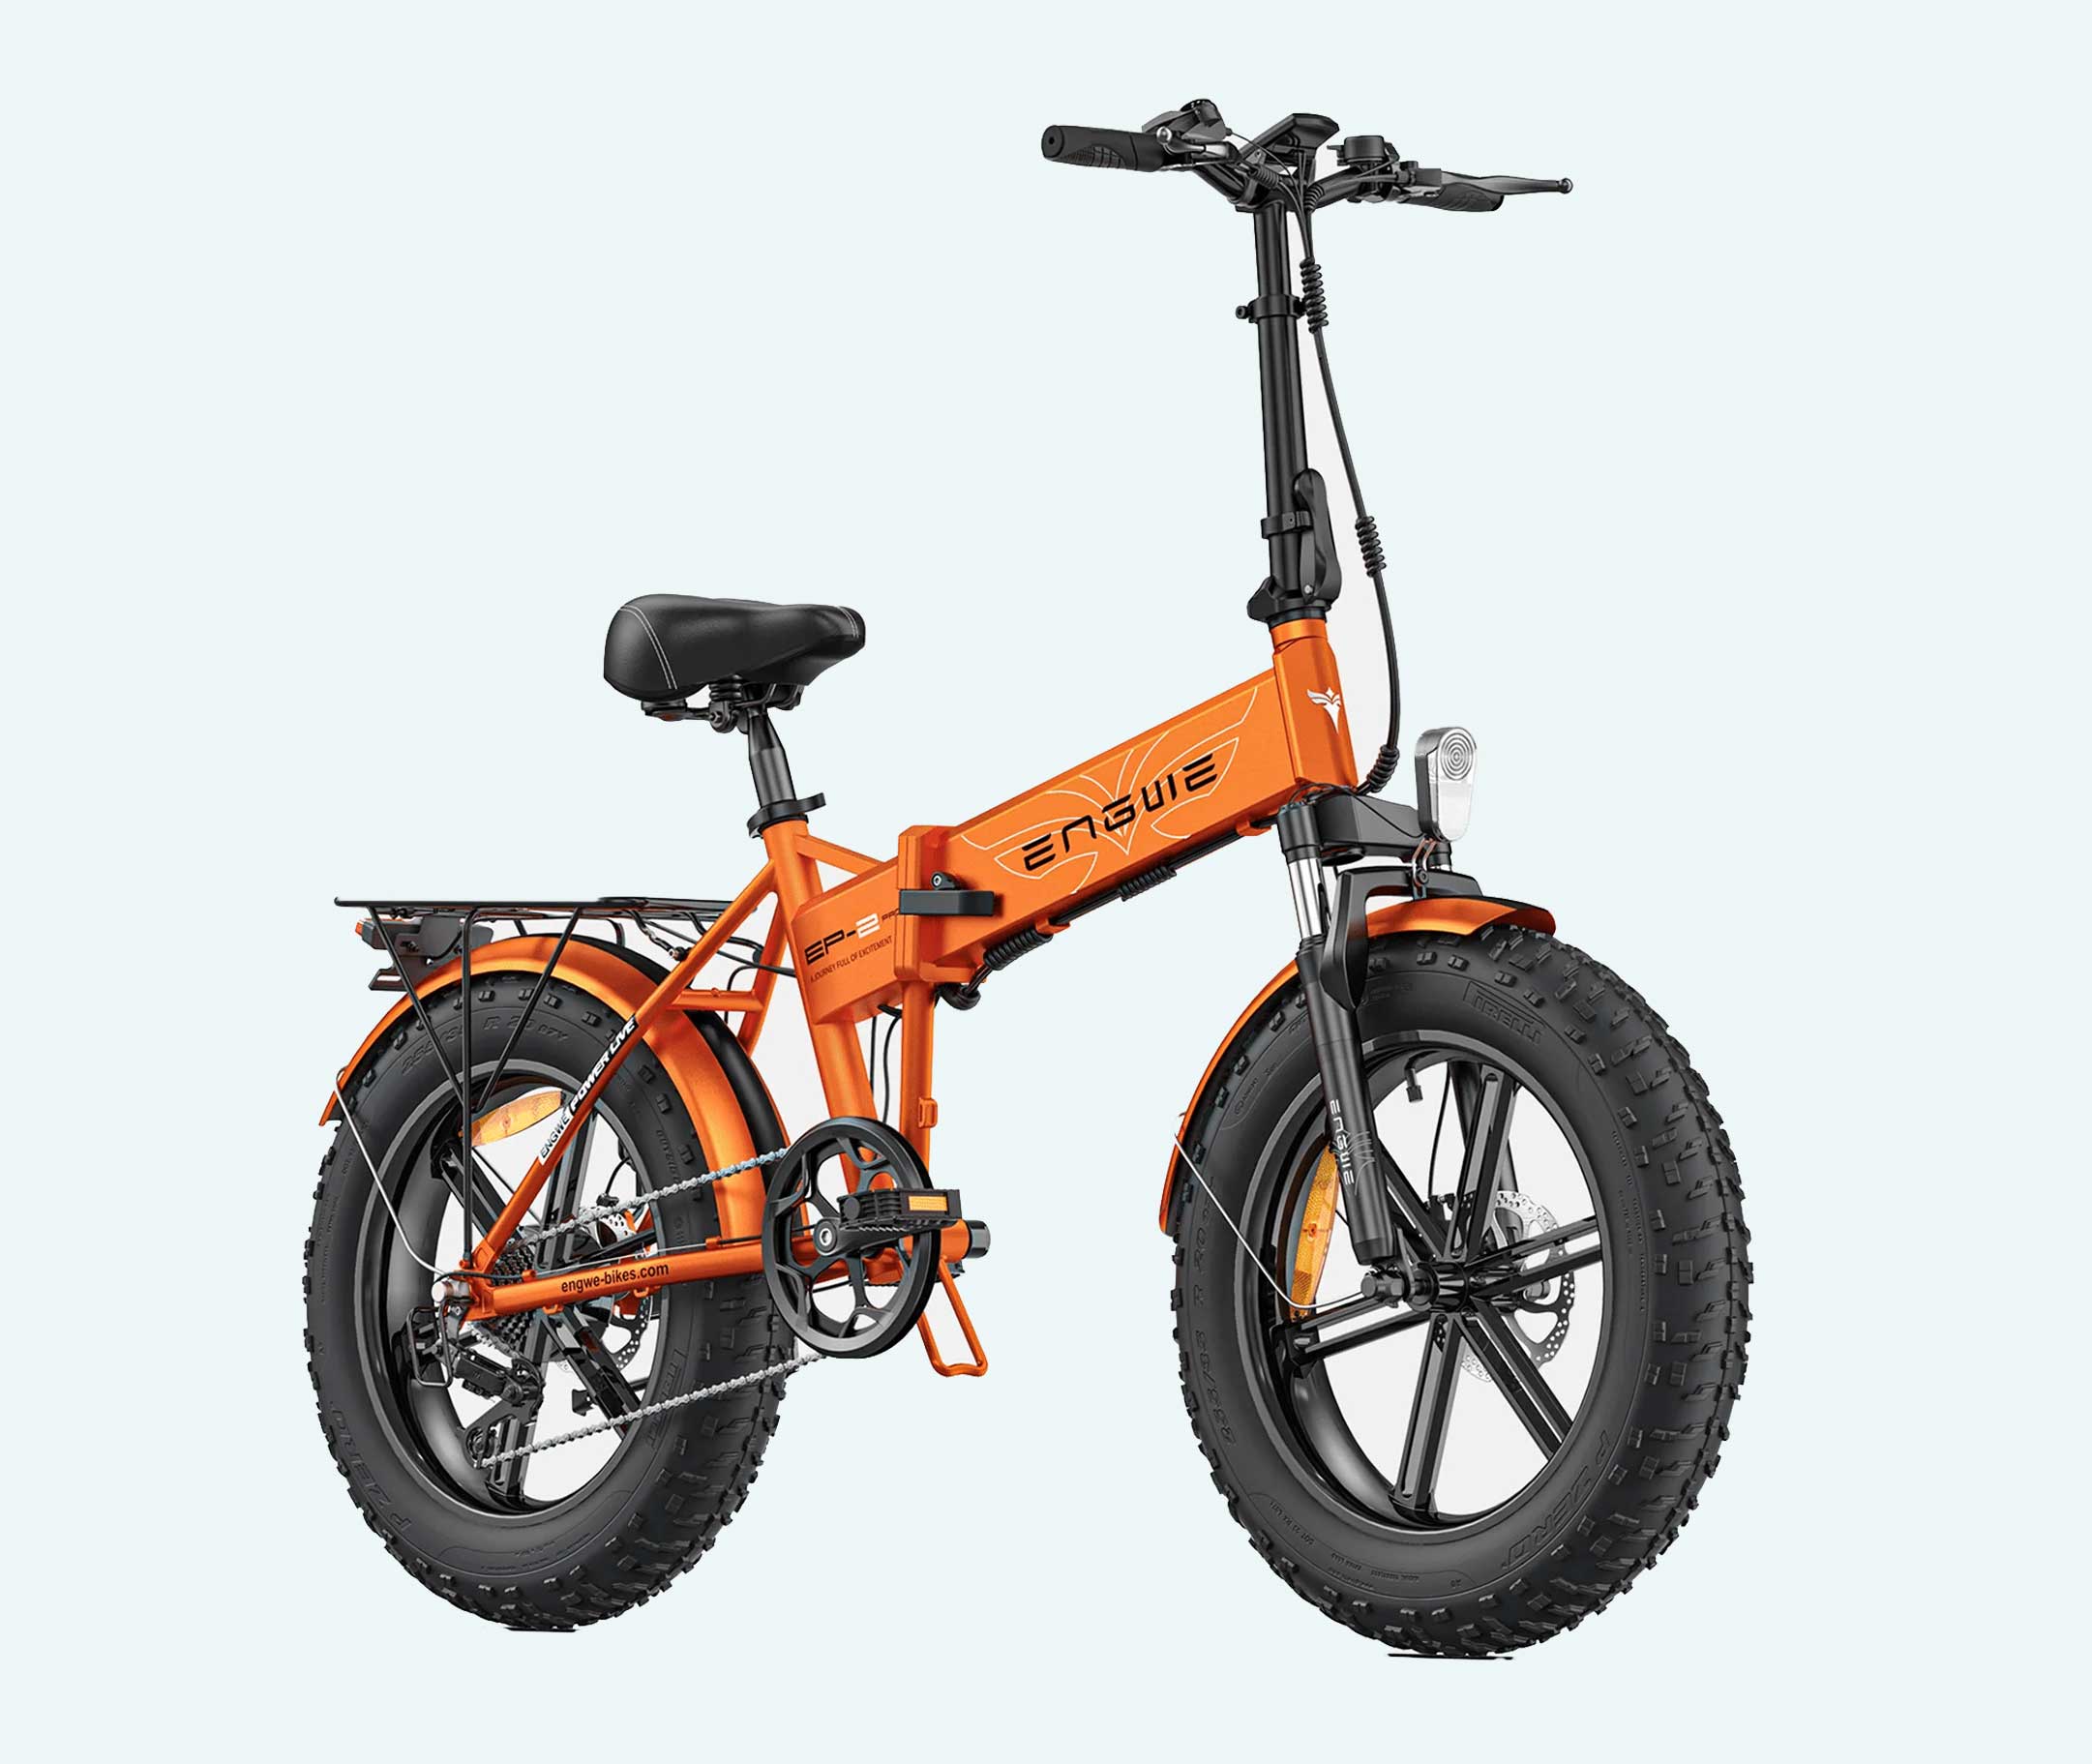 elektrische-vouwfietsen-kopen-engwe-pro-voorkant-oranje